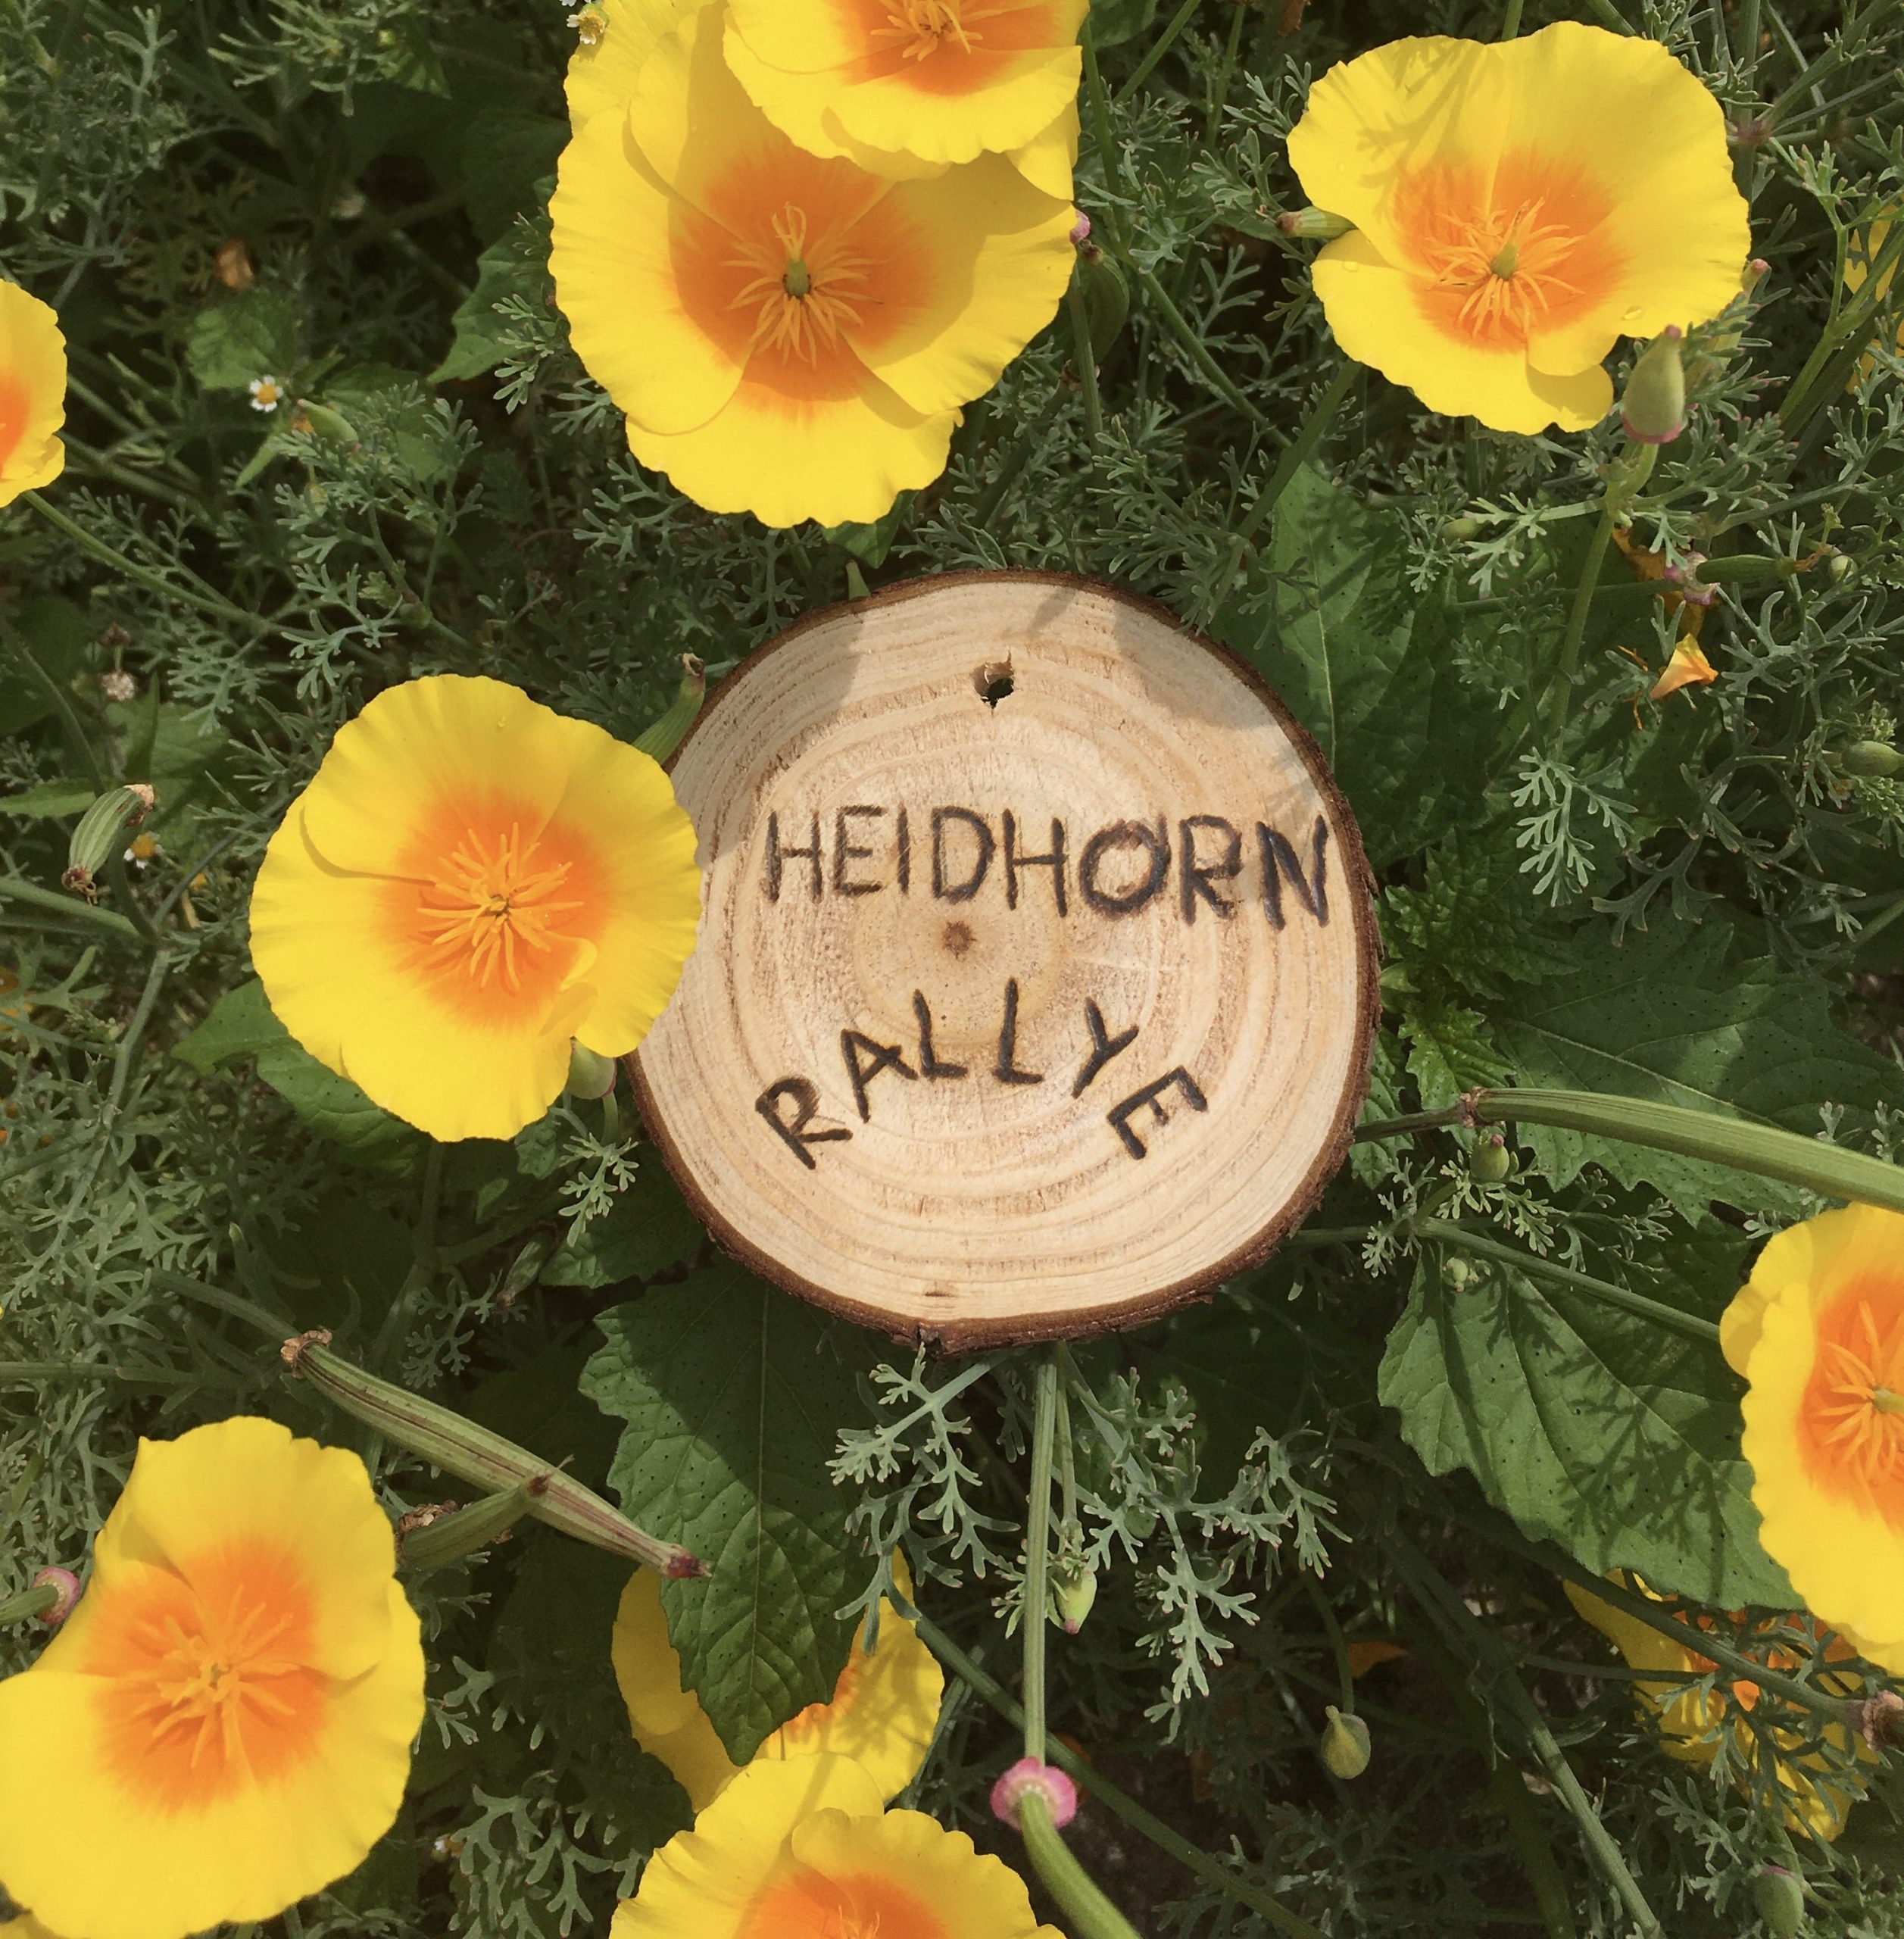 Ein Holzschild mit der Aufschrift "Heidhorn-Rallye" liegt zwischen gelben Blumen.